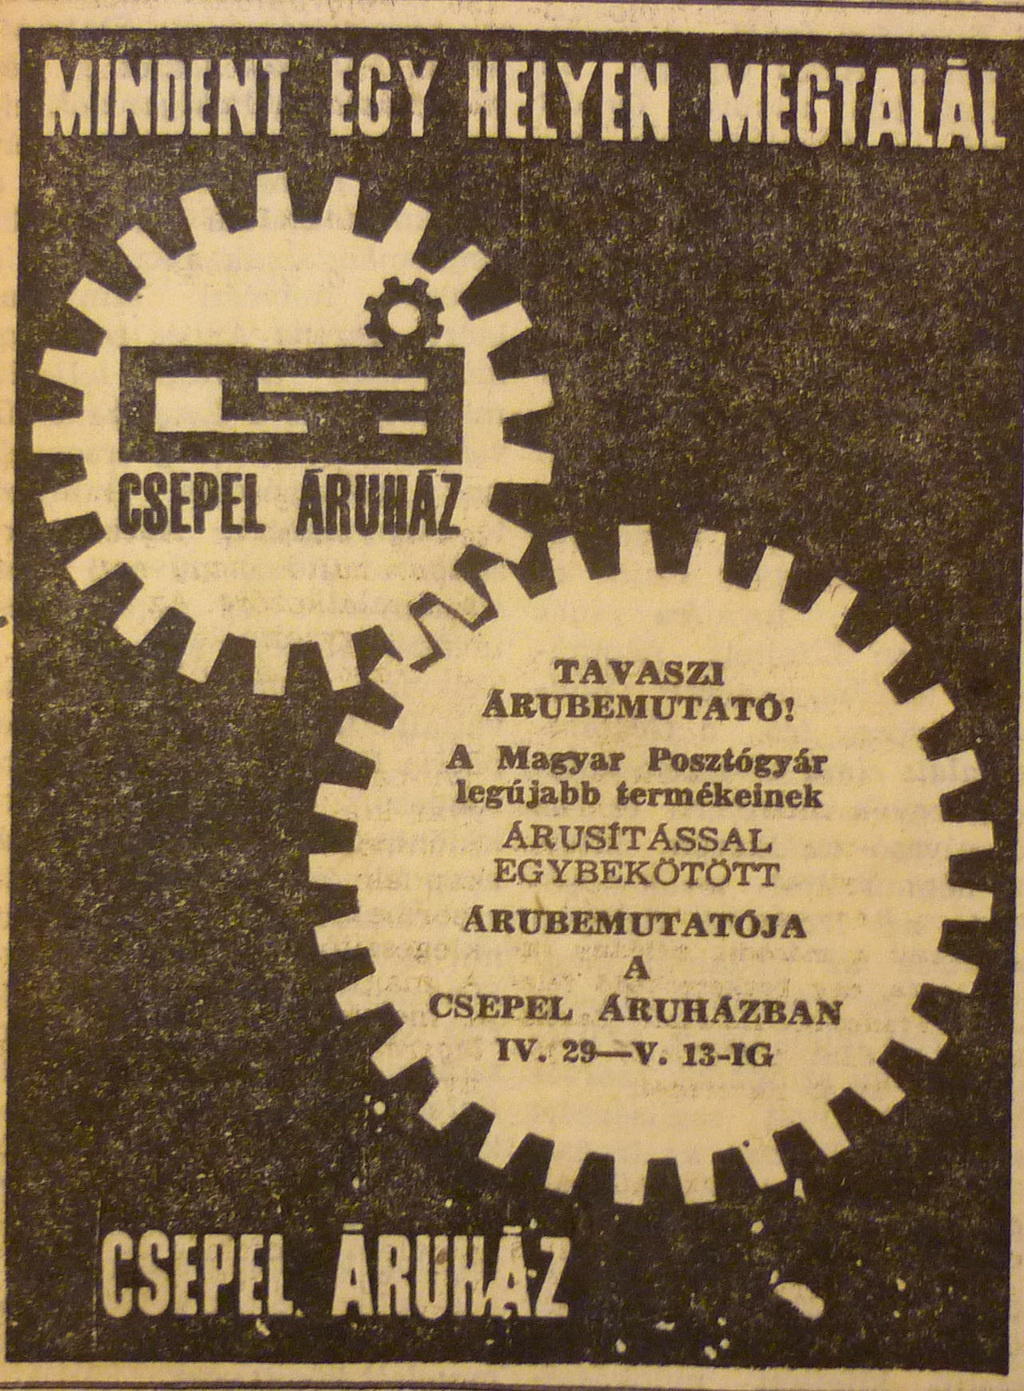 CsepelAruhaz-196704-MagyarNemzetHirdetes